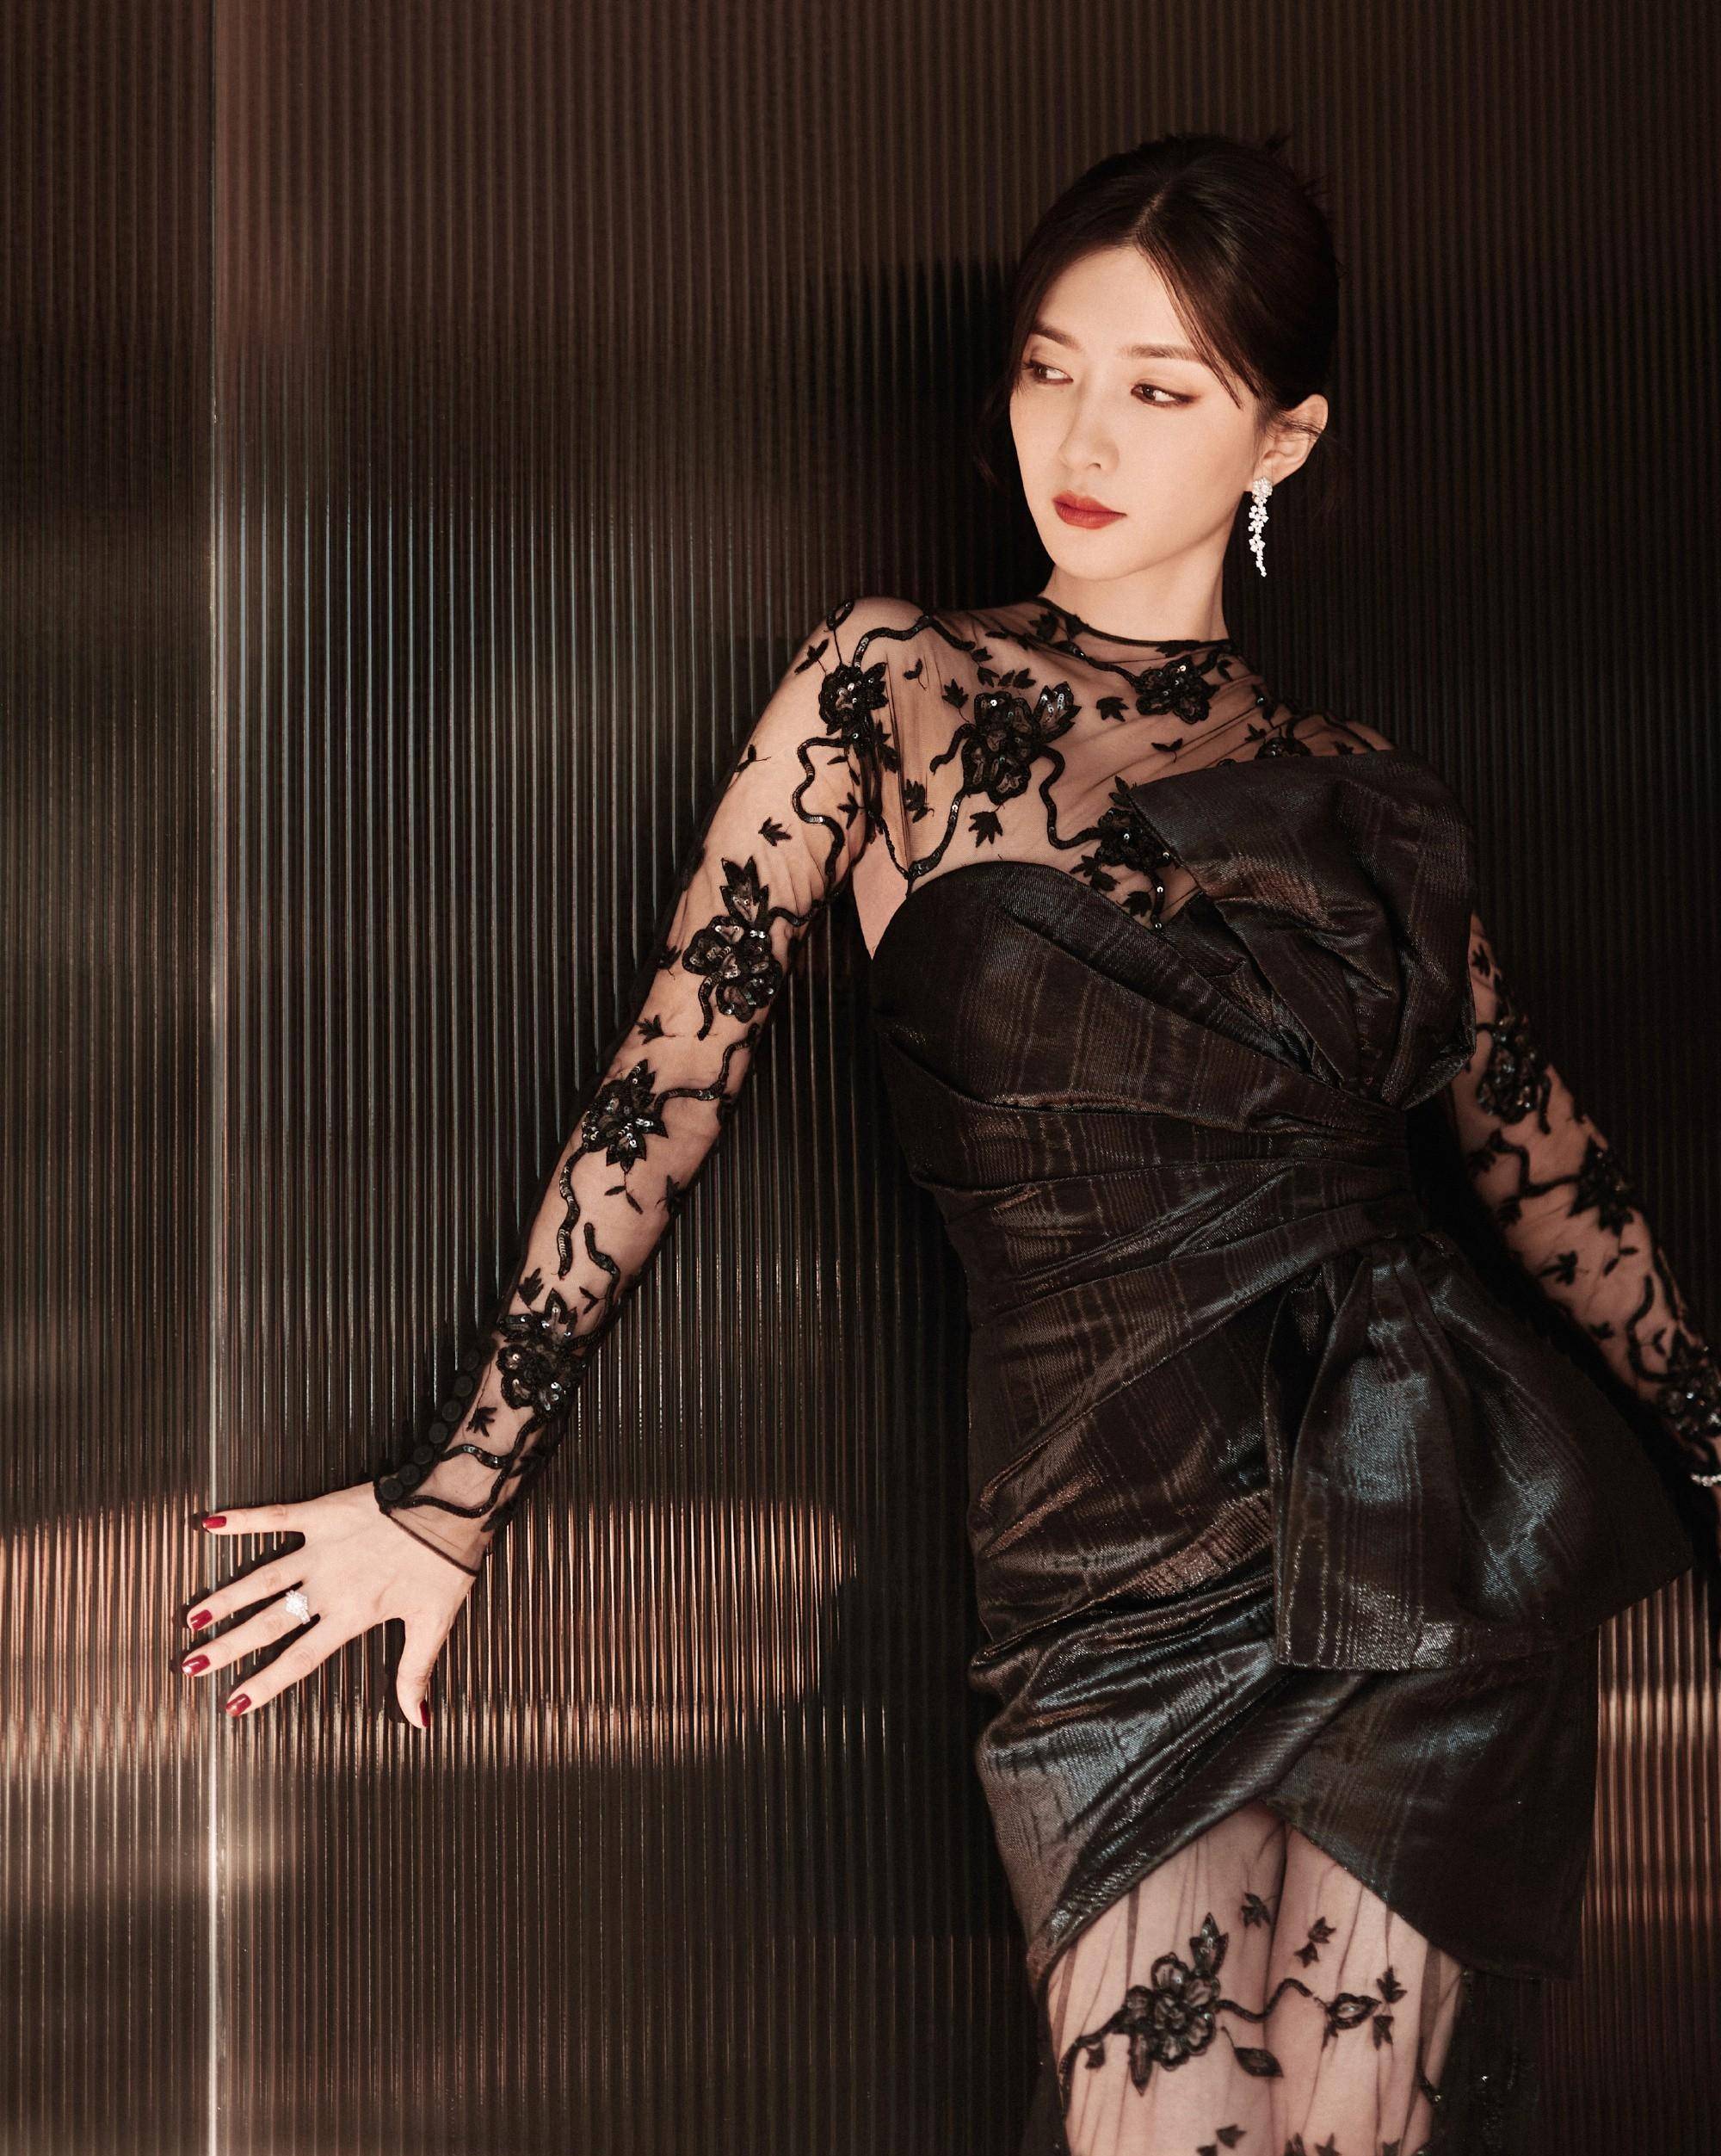 这件黑色连衣裙设计新颖,剪裁精良,将江疏影的完美身材展现得淋漓尽致